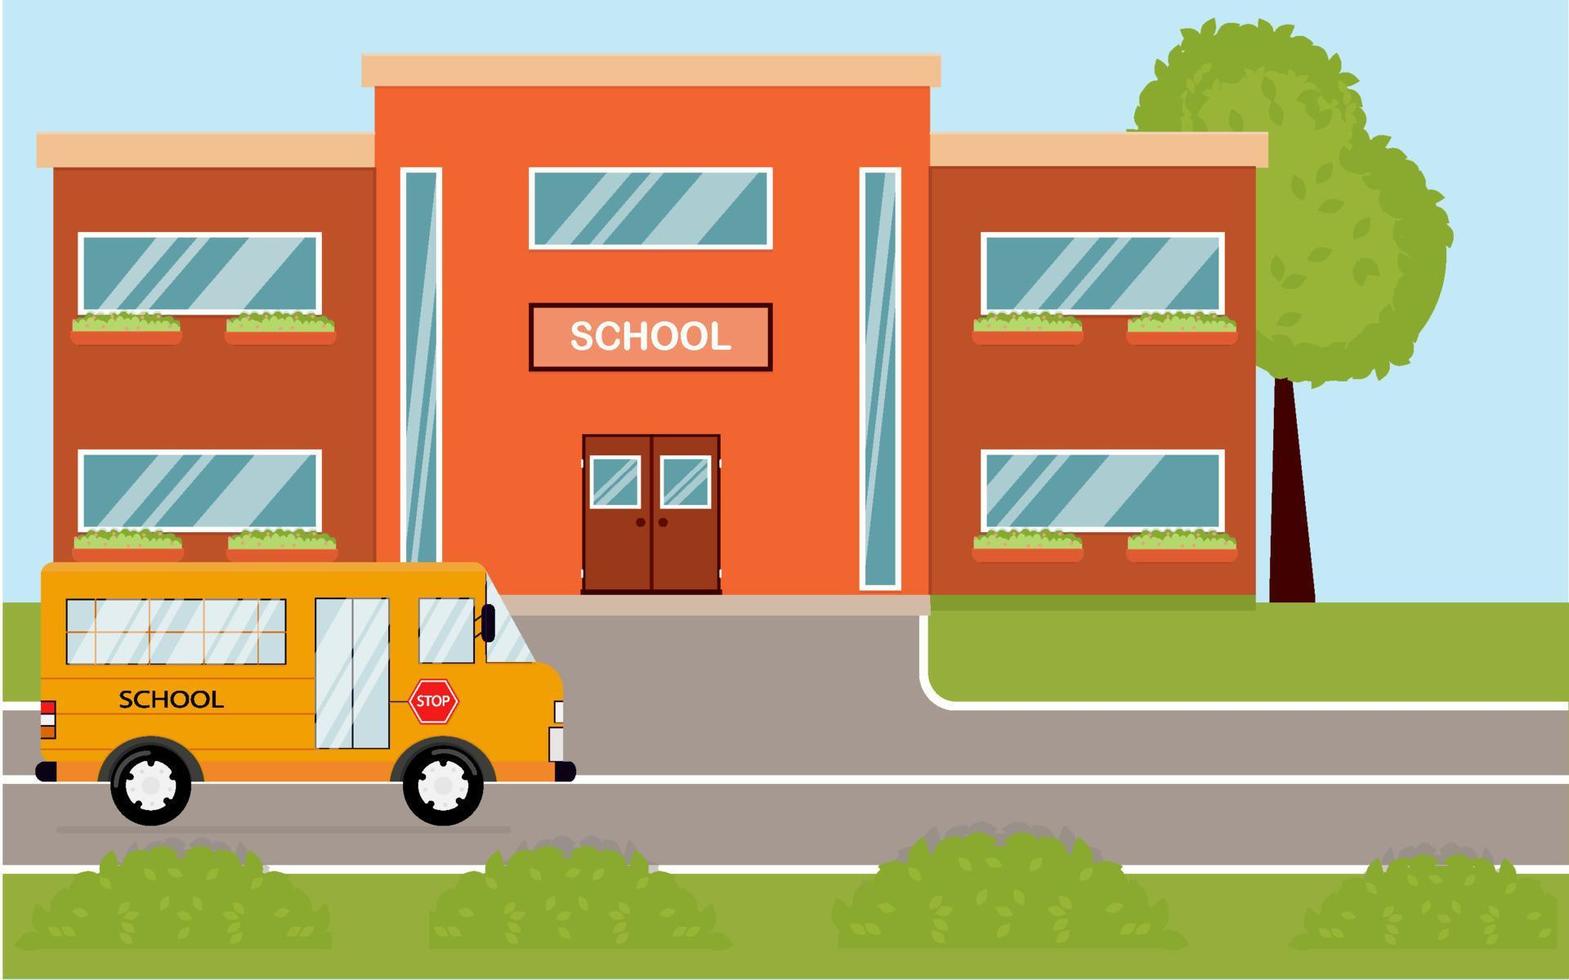 prédio da escola em estilo cartoon. escola moderna, ao fundo da rua, com ônibus e quintal na frente. ilustração vetorial vetor